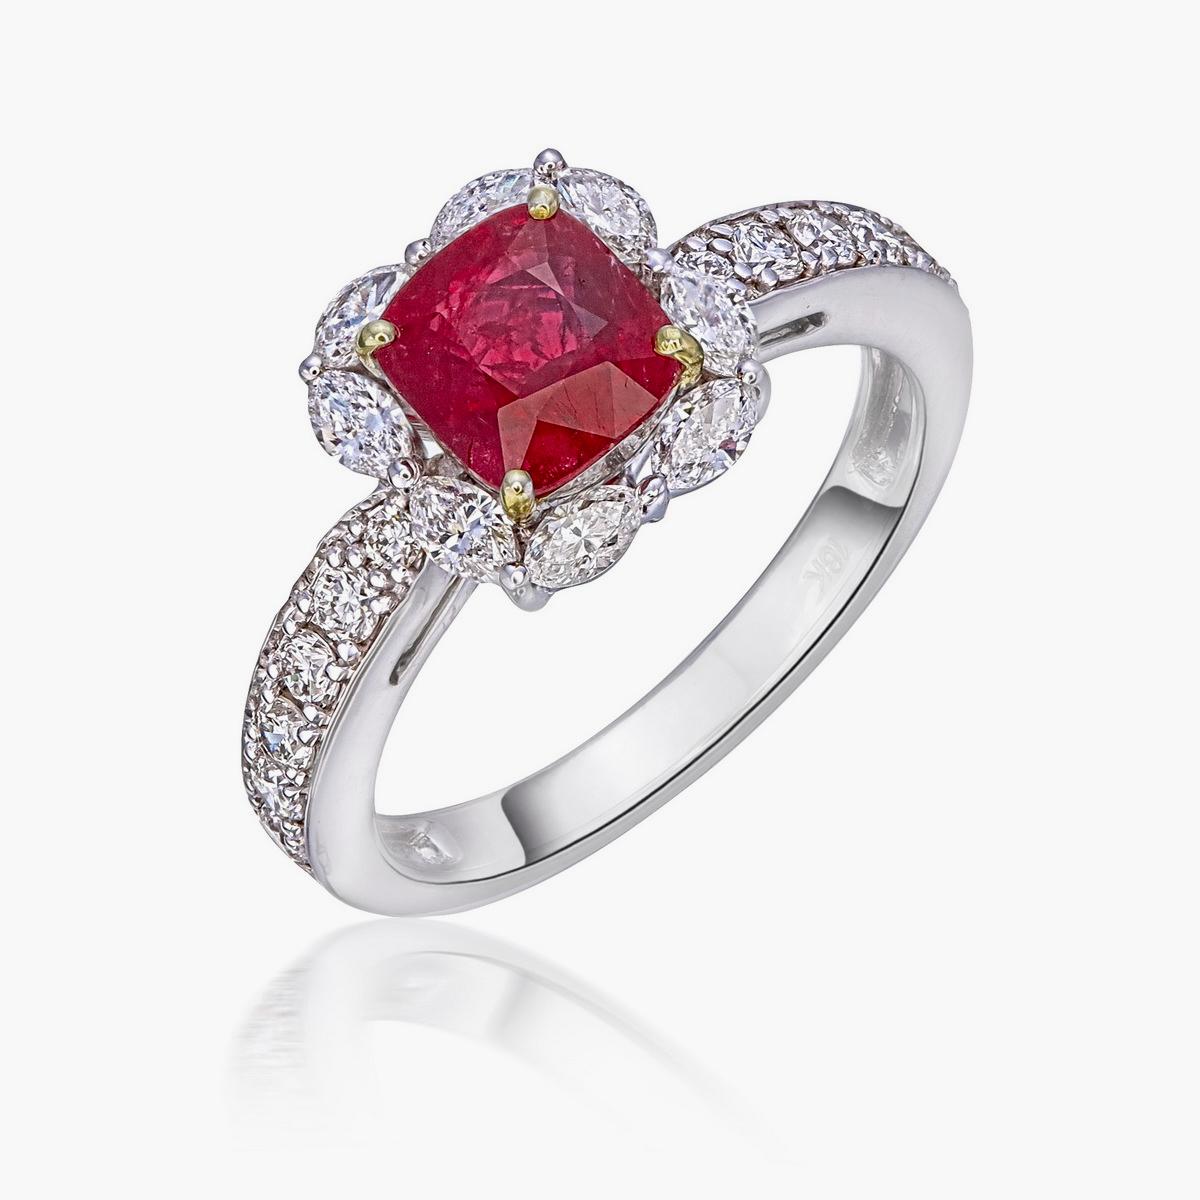 Bague solitaire en or 18 carats, rubis et diamants, de couleur rouge 